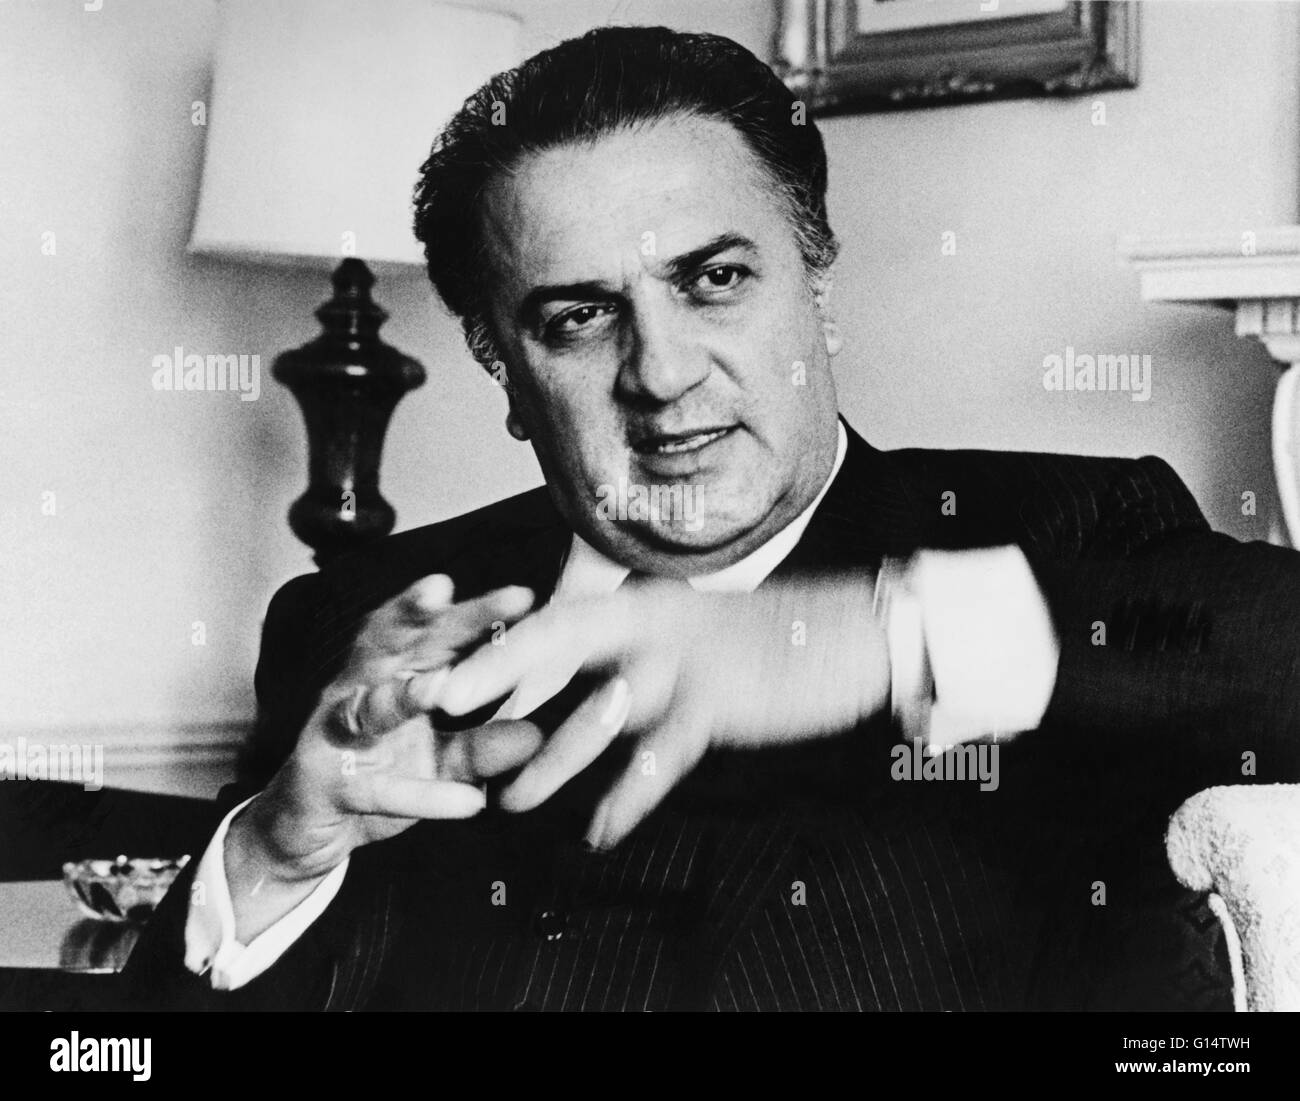 Fellini, fotografiert im Jahr 1965 von Walter Albertin. Federico Fellini (20. Januar 1920 - 31. Oktober 1993) war ein italienischer Filmregisseur und Drehbuchautor. Bekannt für einen unverwechselbaren Stil, der Fantasie und barocke Bilder verbindet, gilt er als einer der die meisten inf Stockfoto